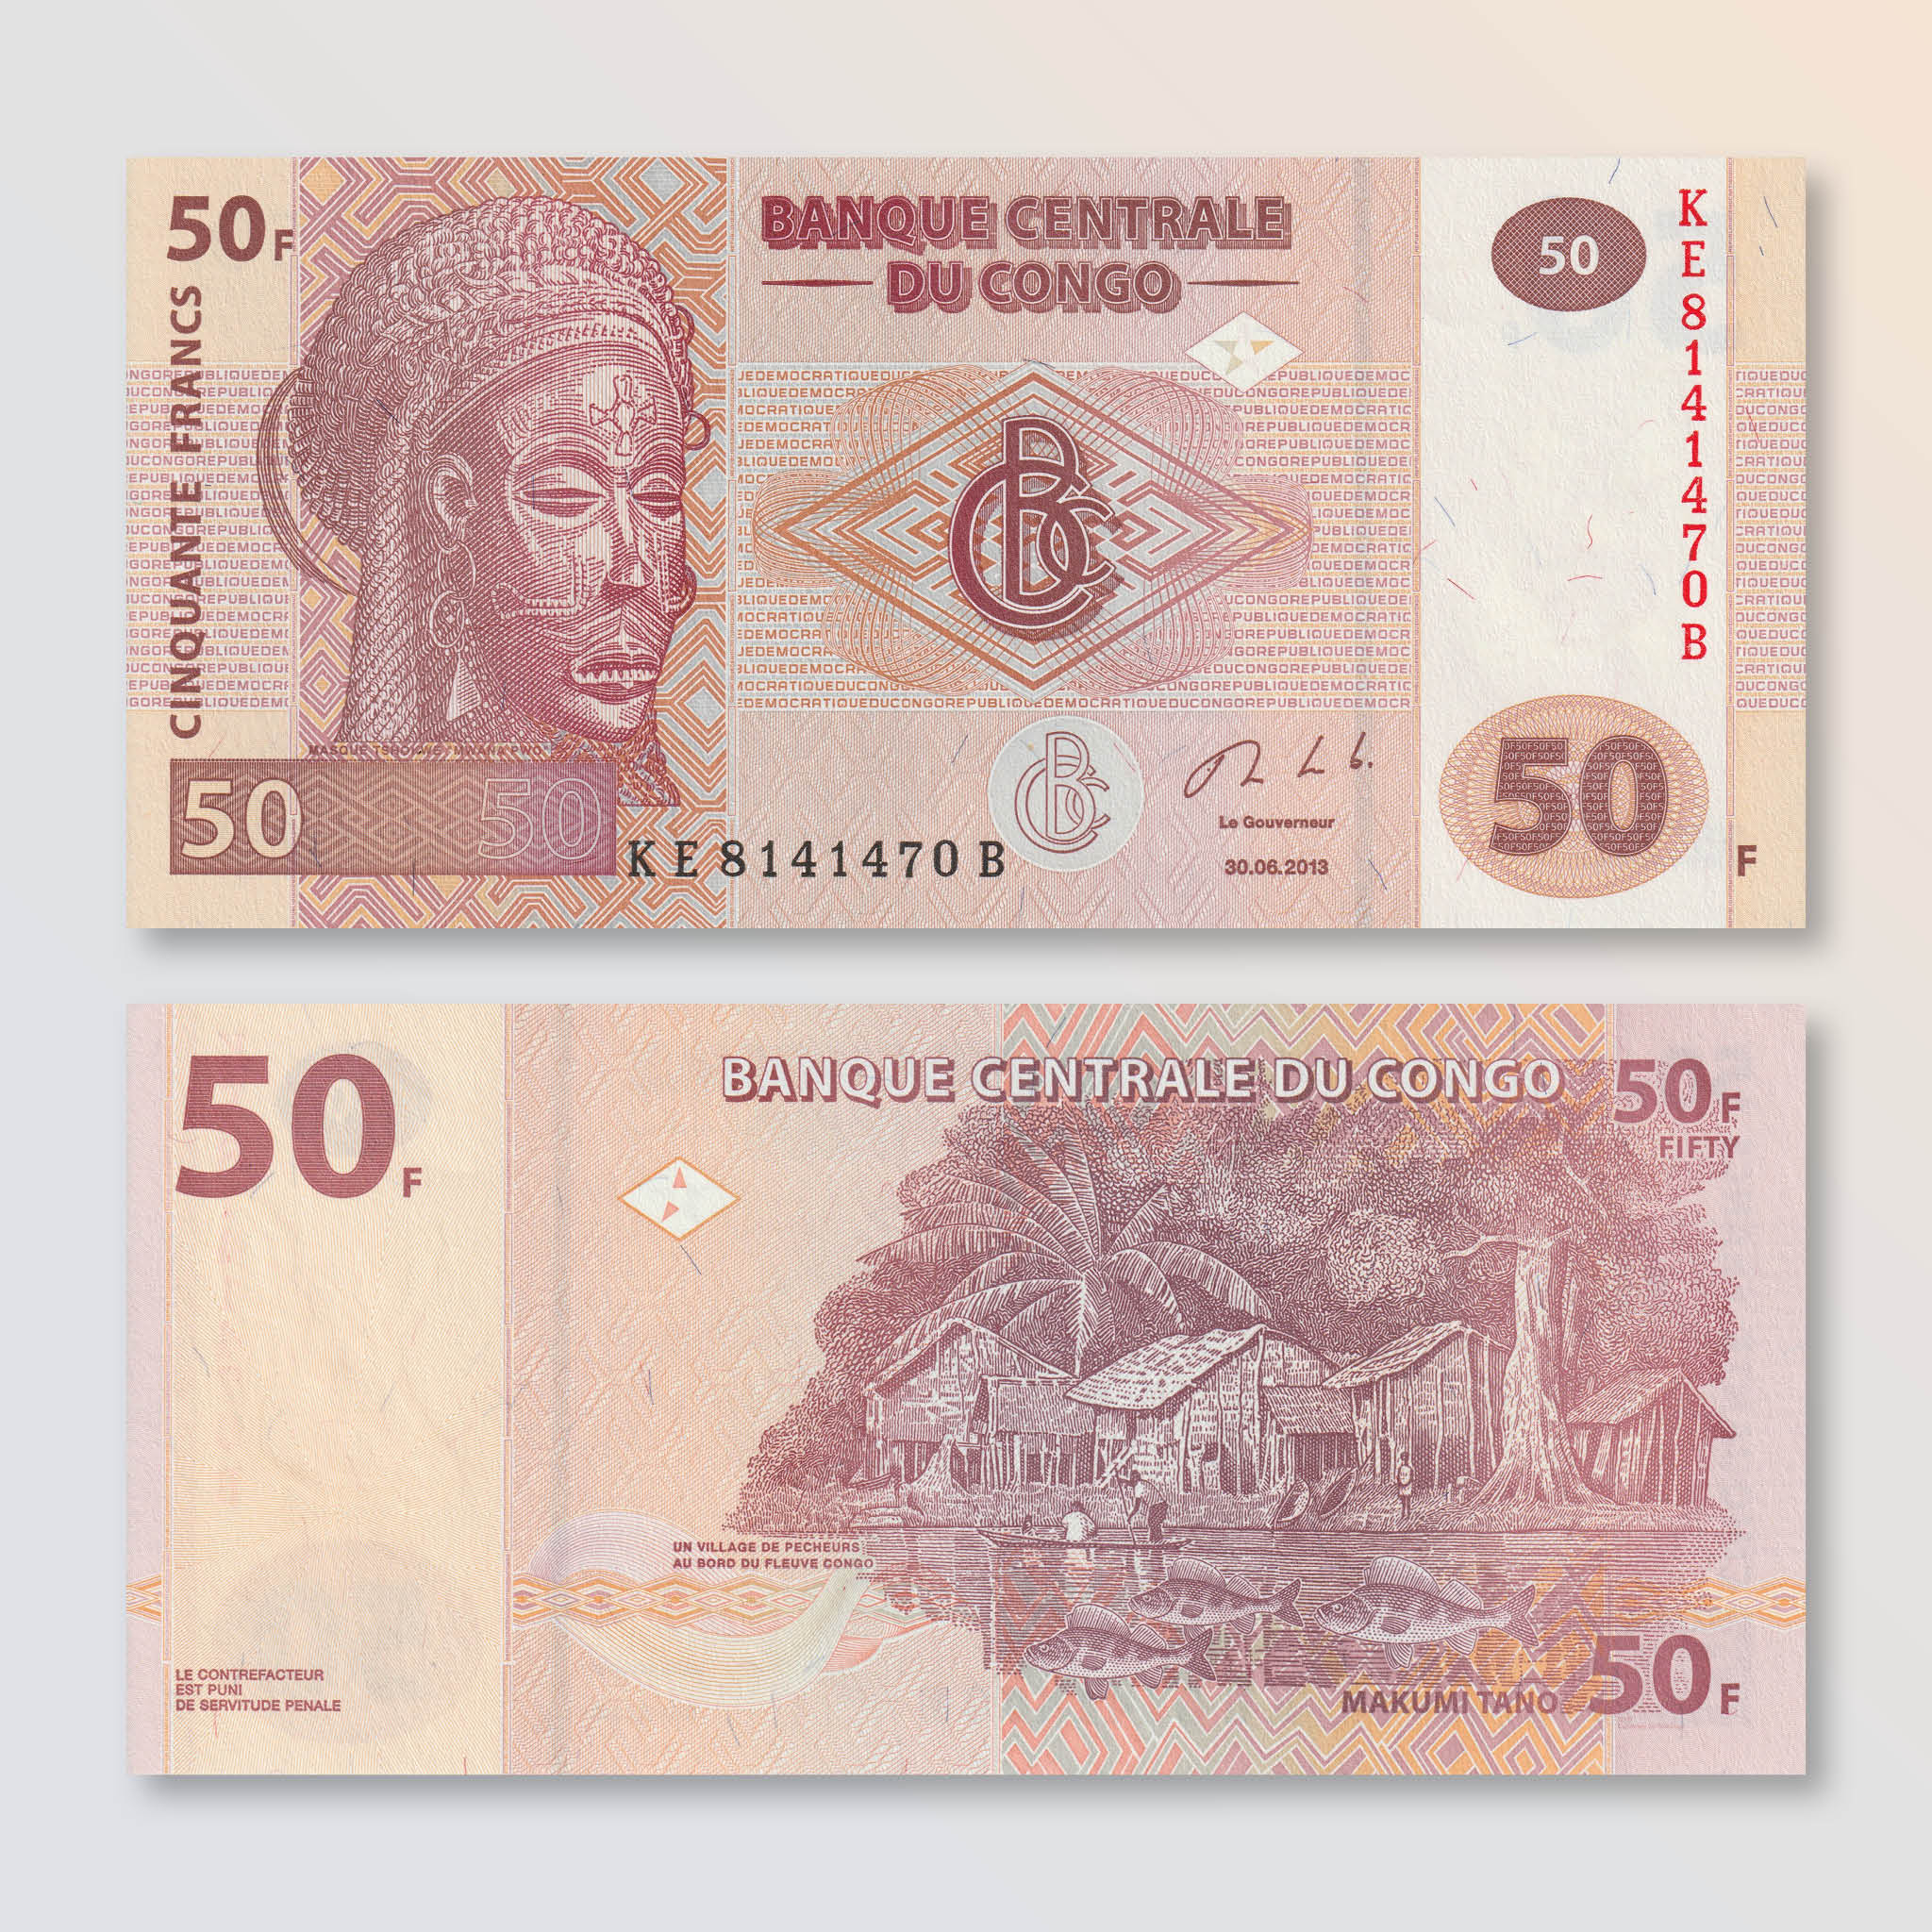 Congo Democratic Republic 50 Francs, 2013, B319b, P97A, UNC - Robert's World Money - World Banknotes